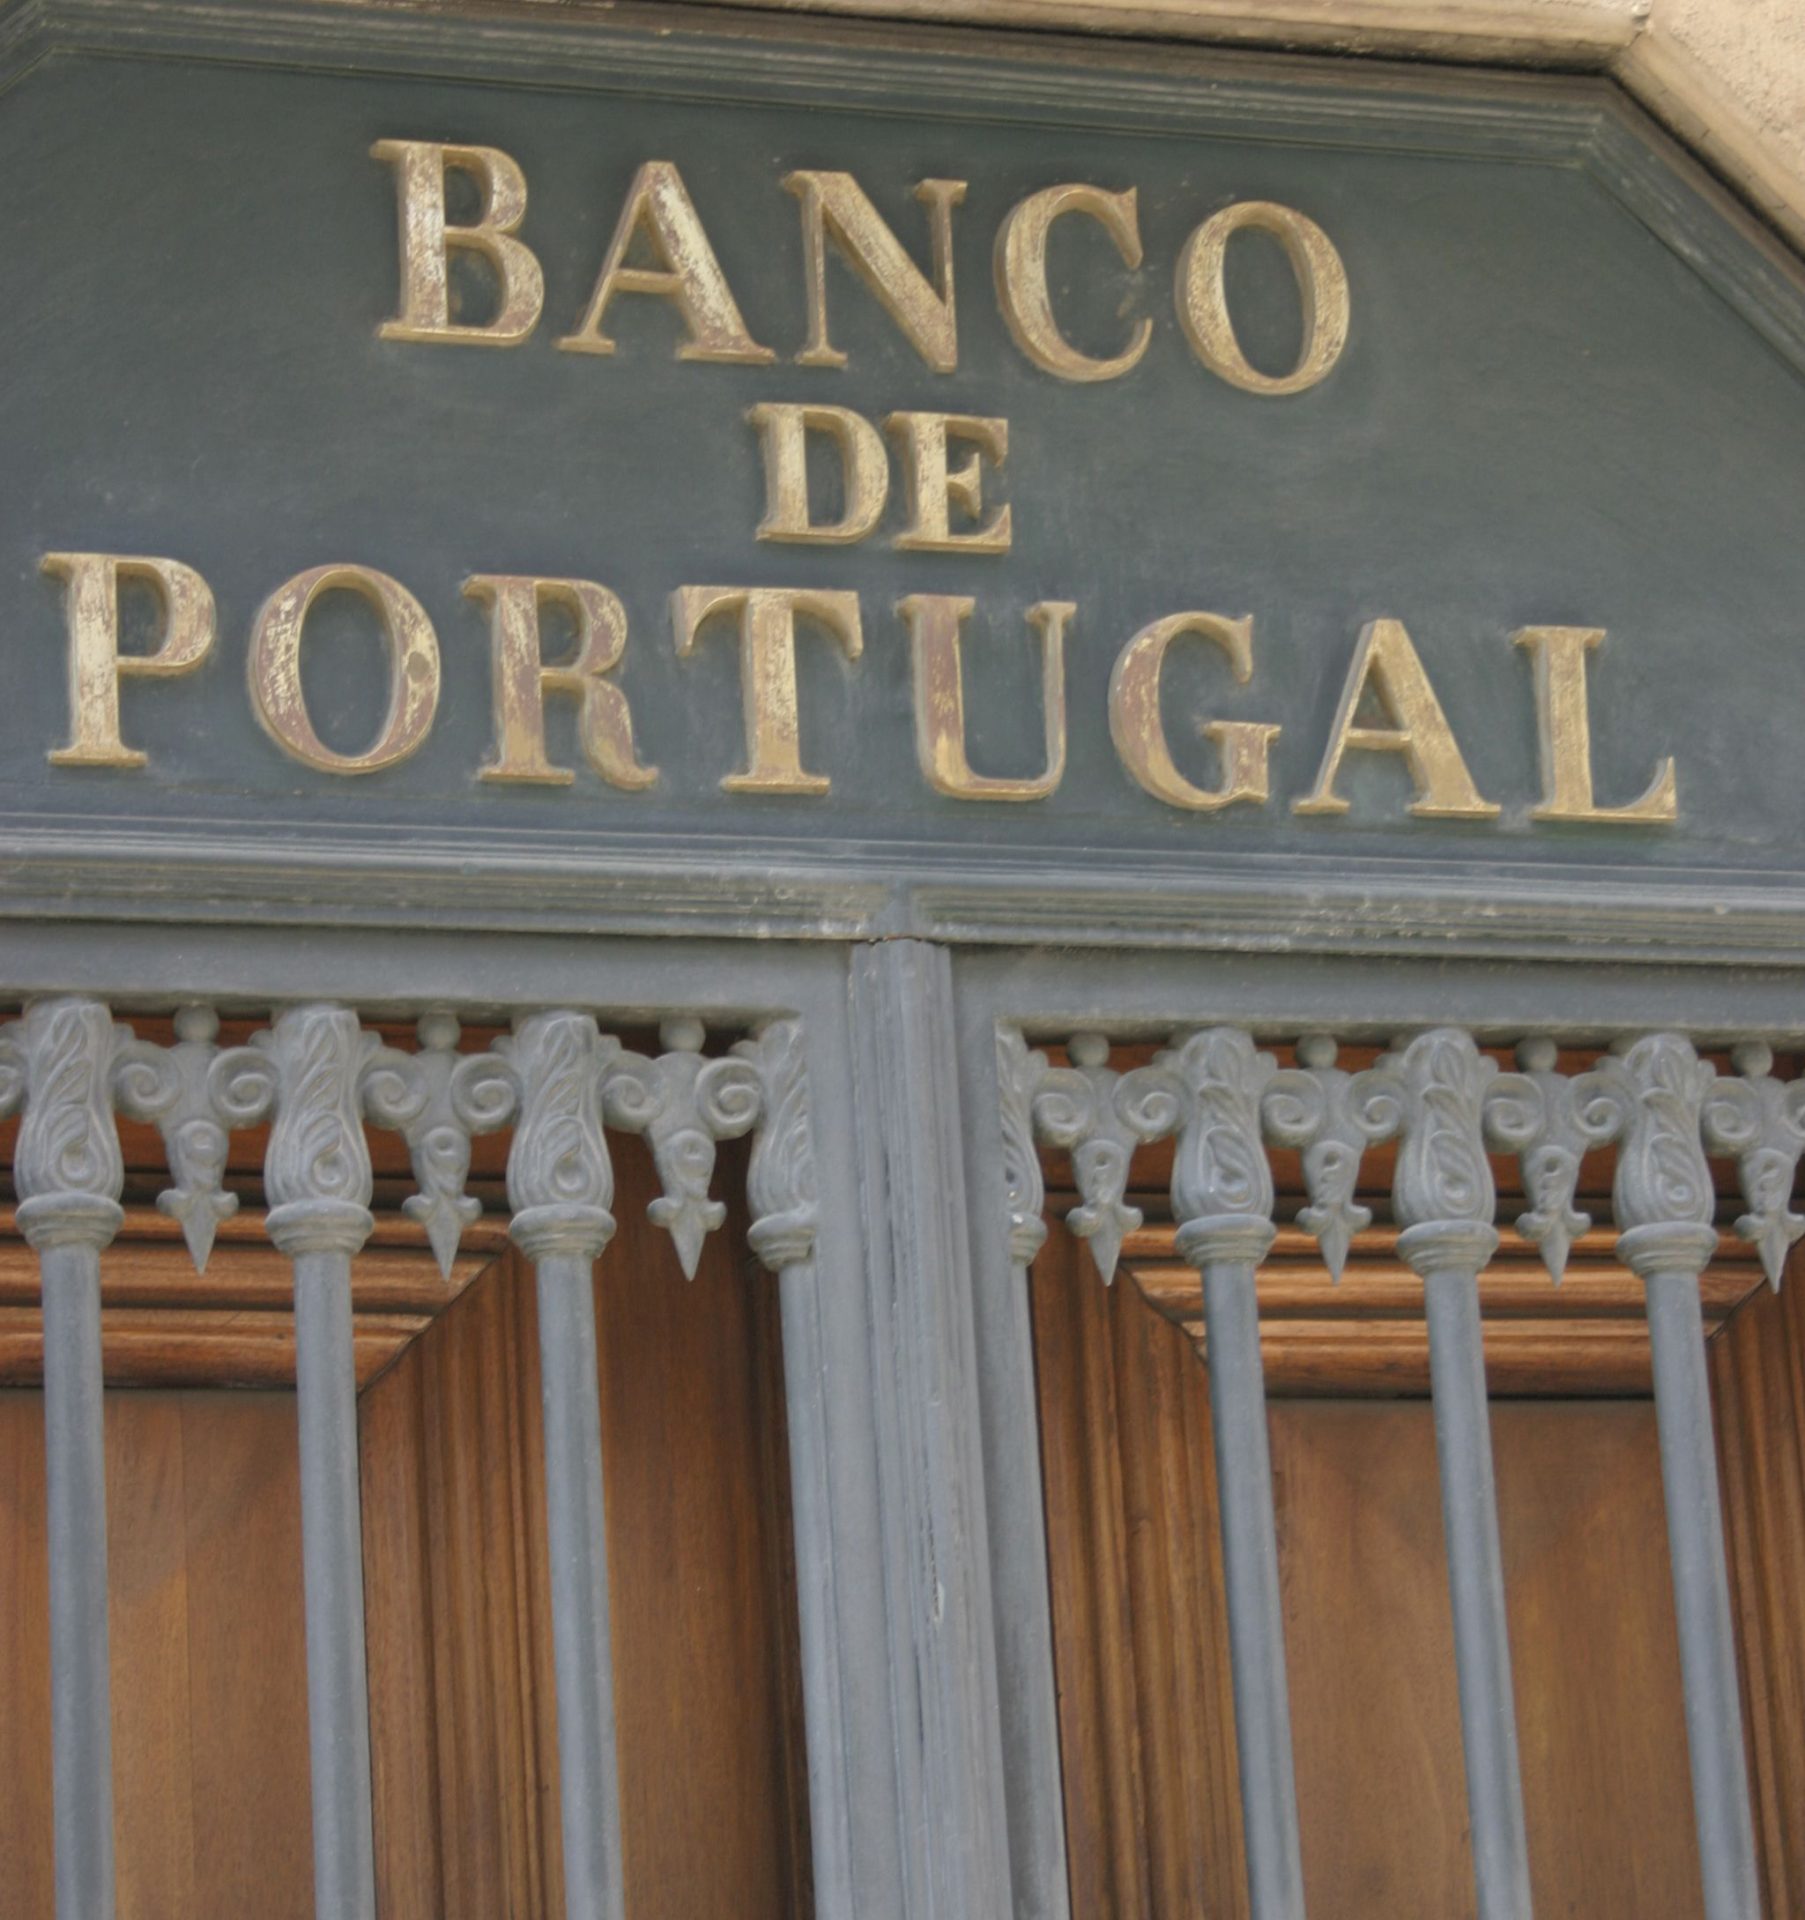 Banco de Portugal alerta para entidade sem habilitação para atividade financeira